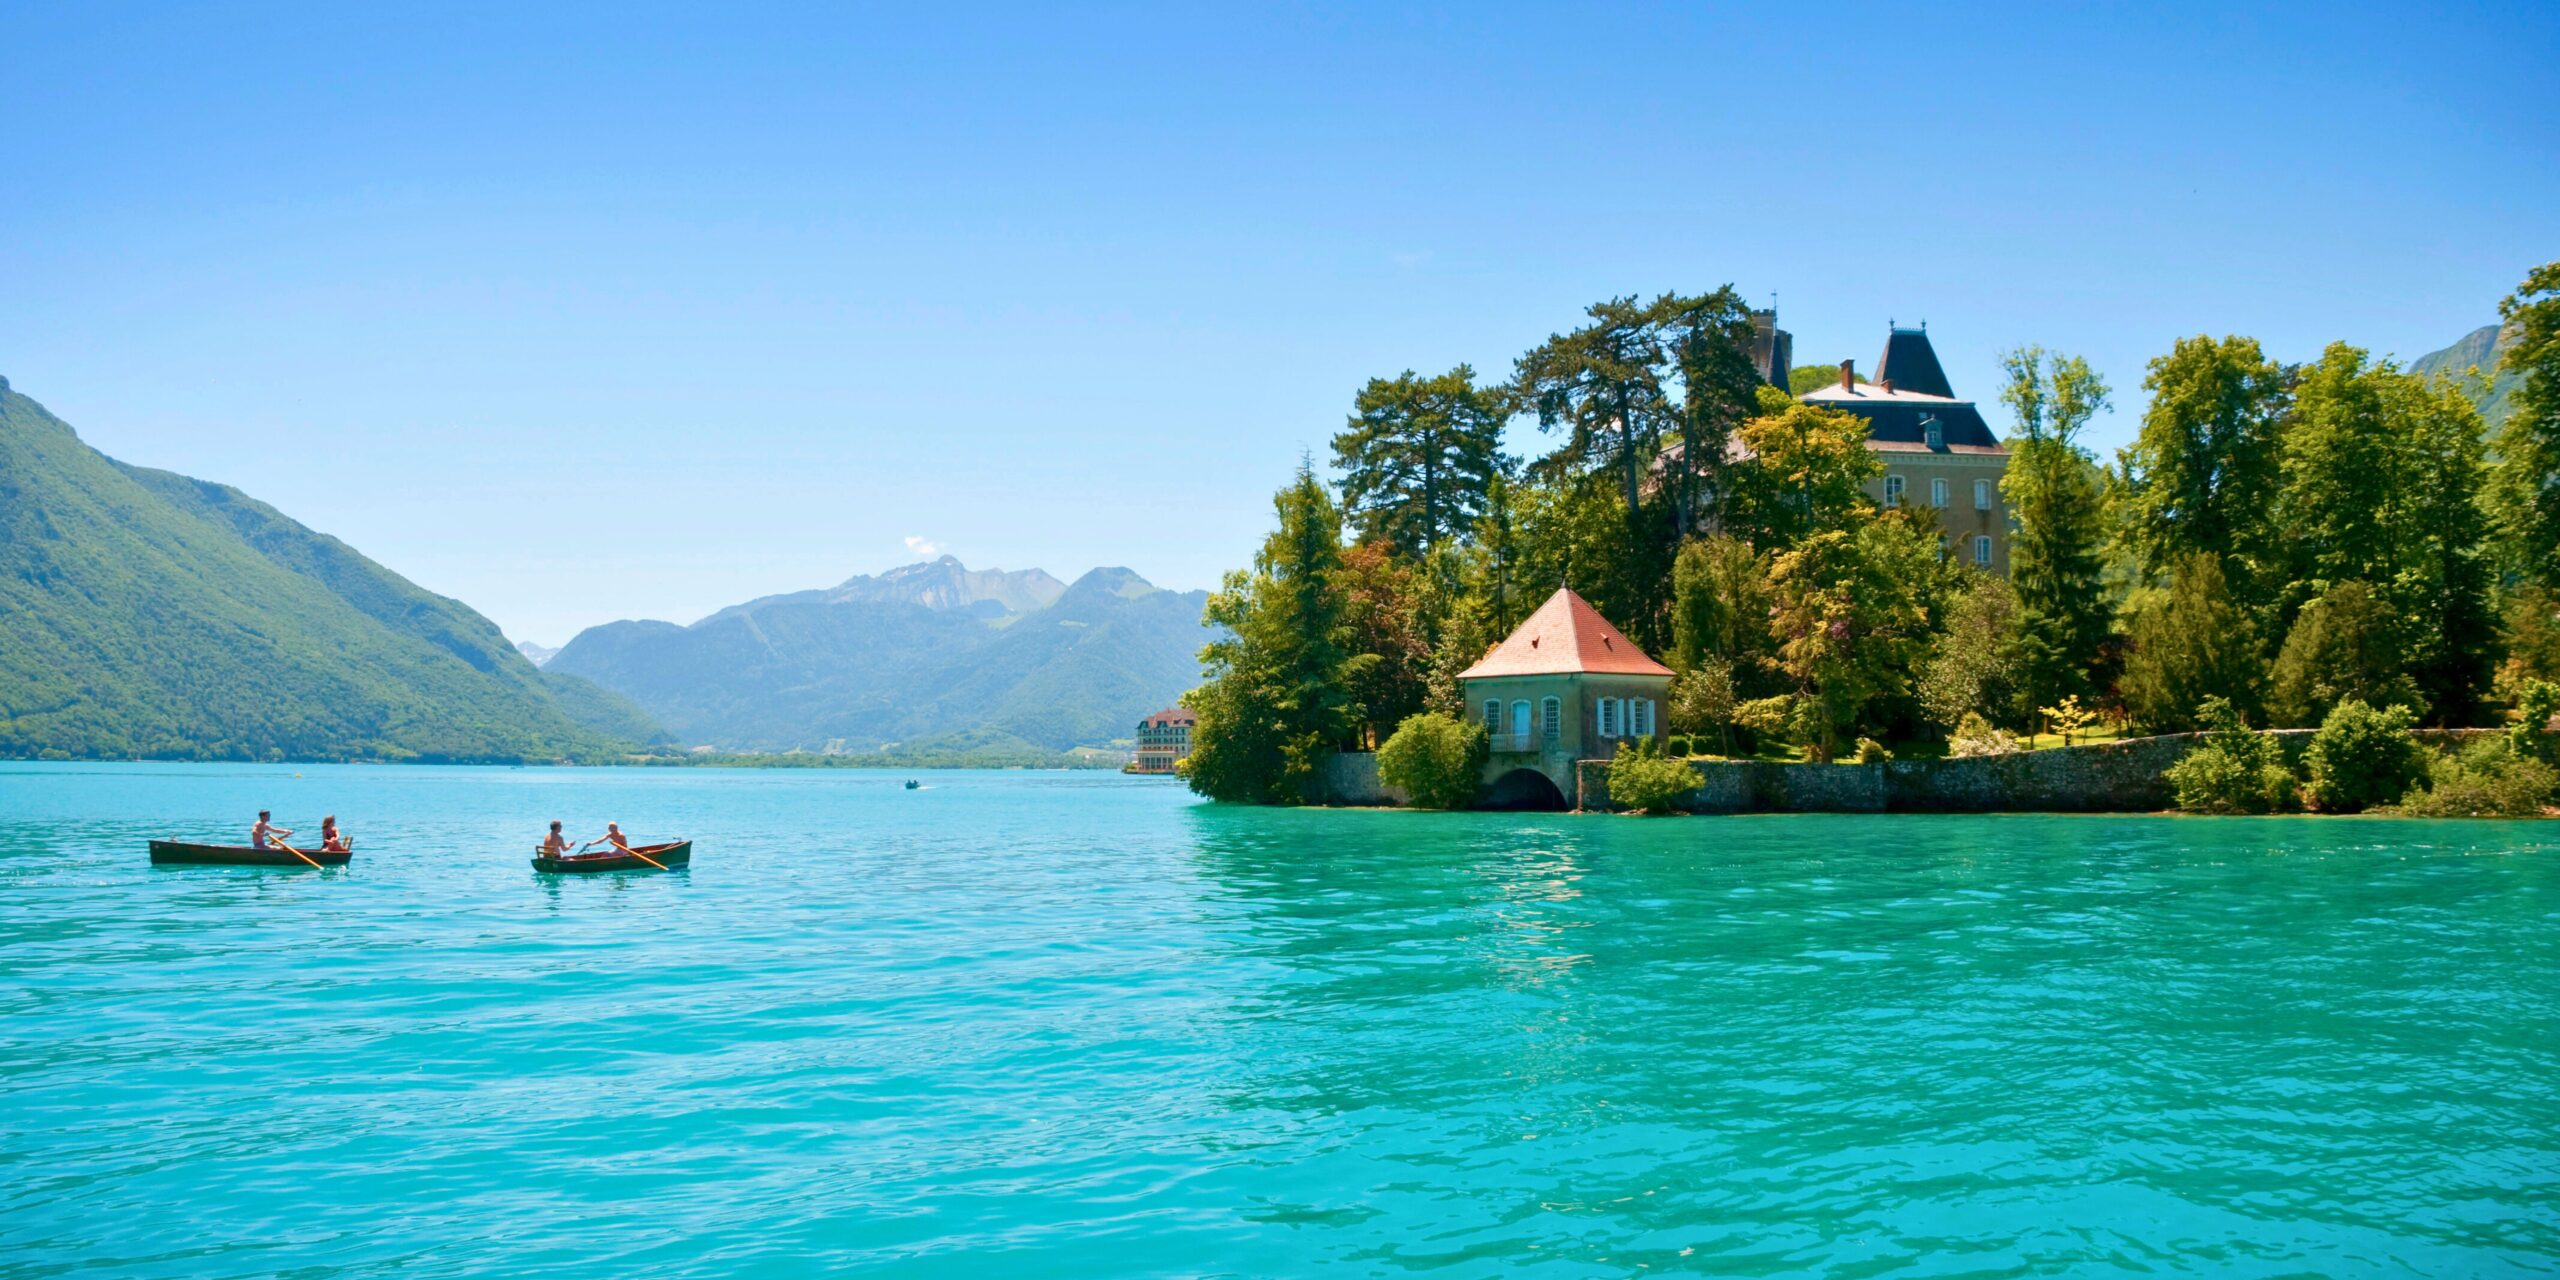 Une balade en bateau sur le lac d'Annecy, à faire pendant un séjour dans les Alpes